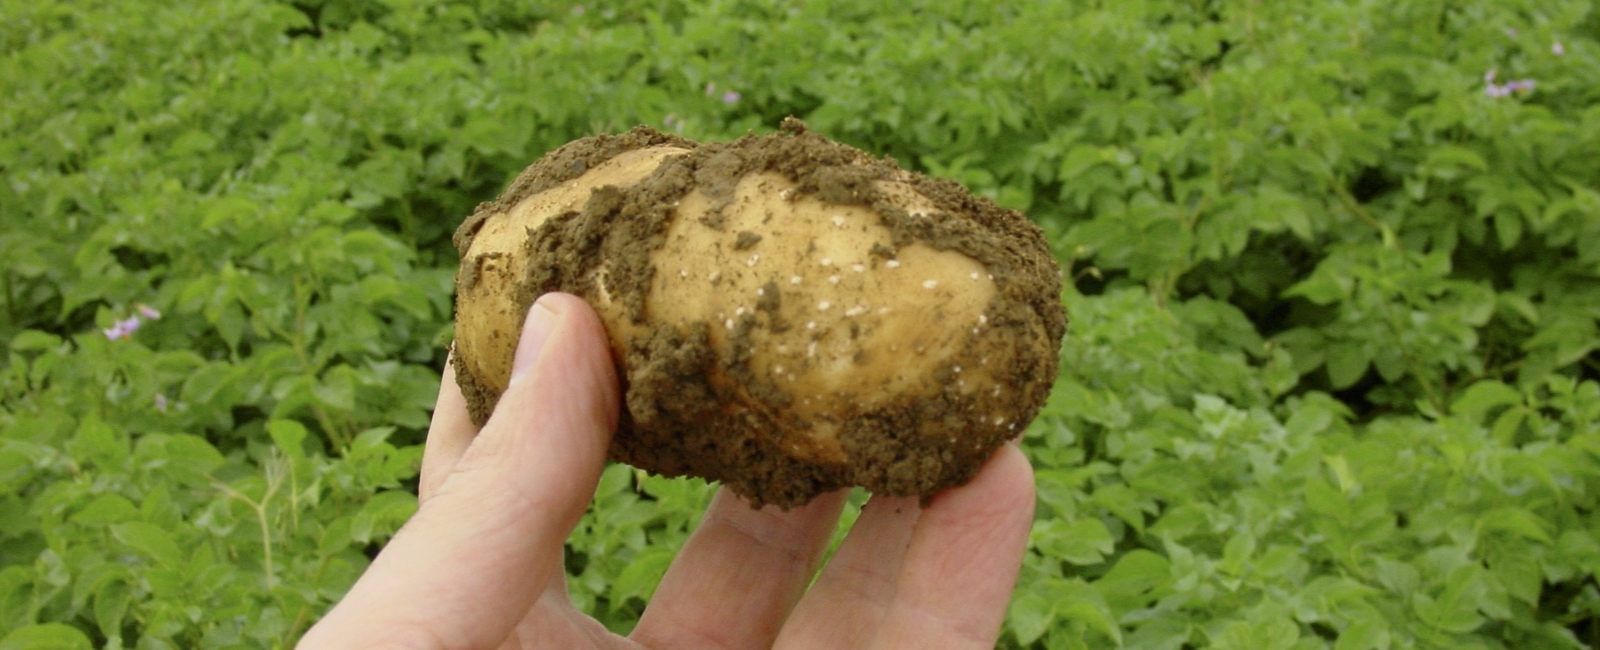 Función de hierro en la producción de patata